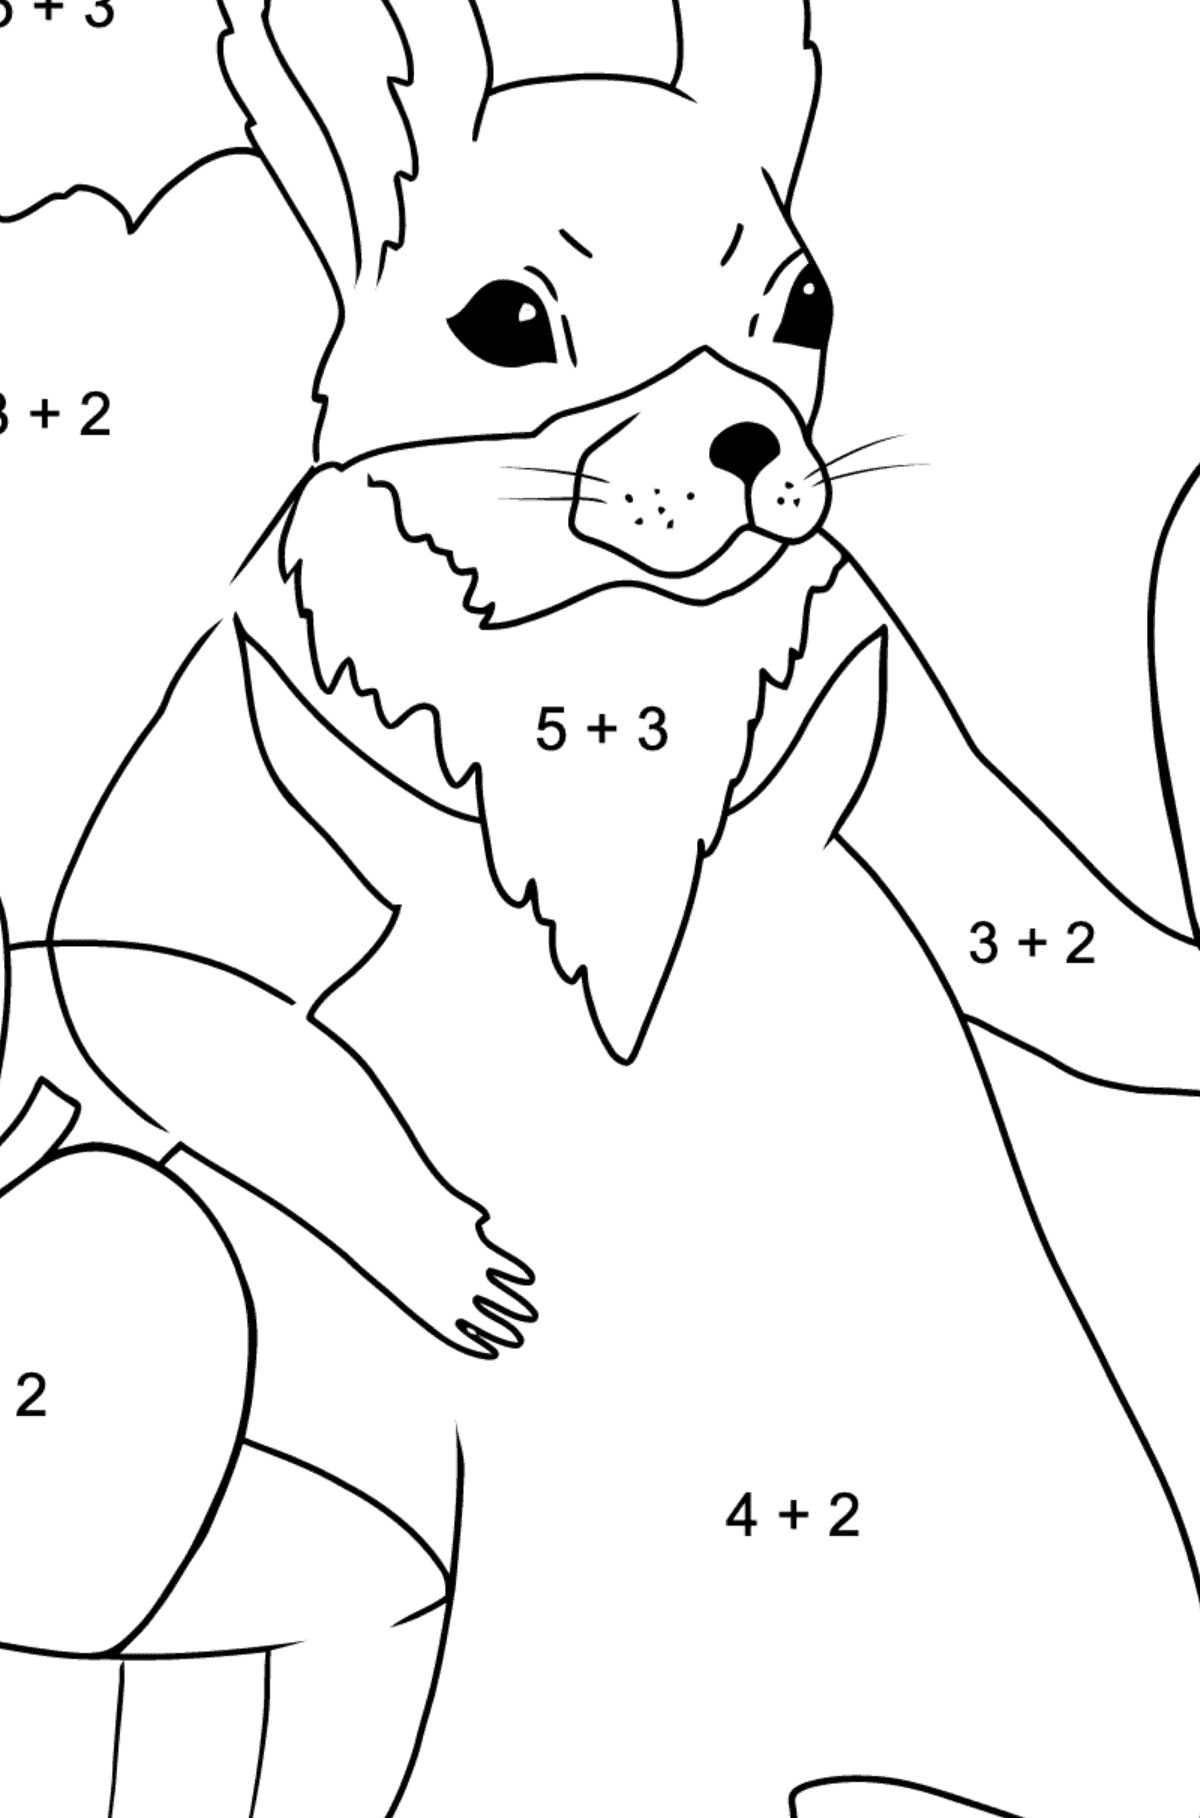 Eichhörnchen Ausmalbild für Kinder - Mathe Ausmalbilder - Addition für Kinder